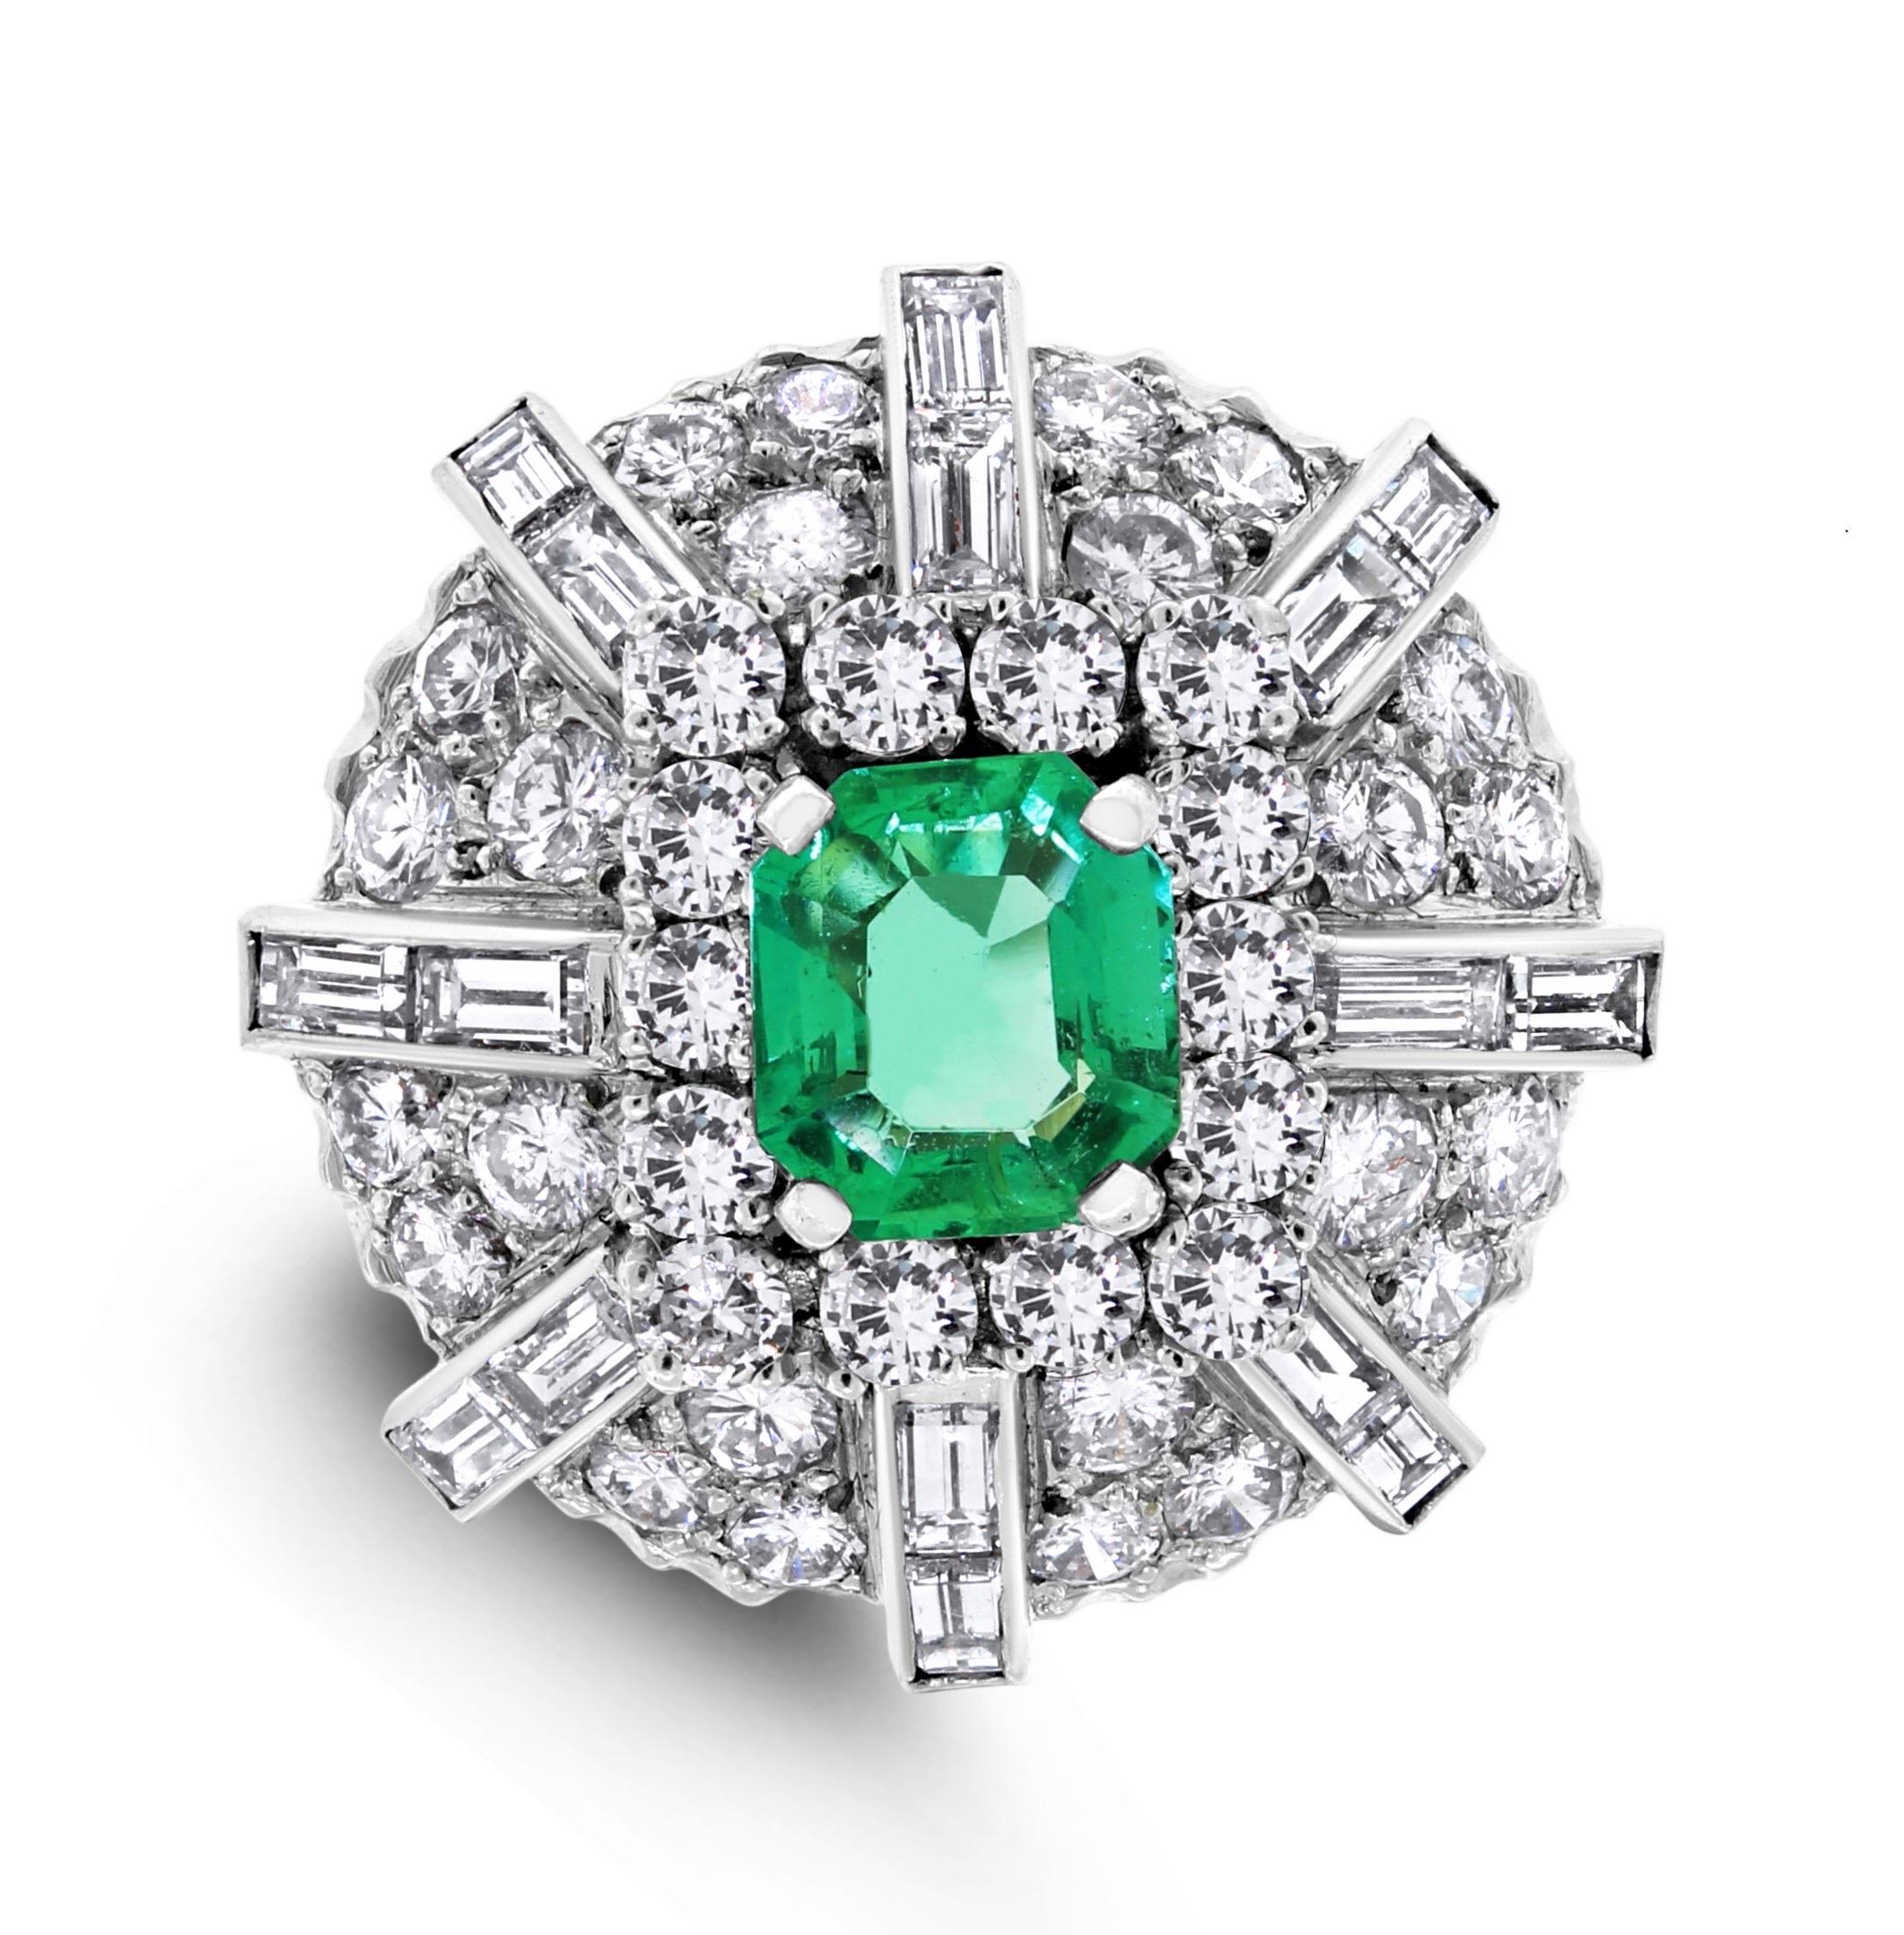 Dieser Ring ist eine Mischung aus Alt und Neu: eine antike Kuppel mit modernen Diamantformen, die einen beeindruckenden kolumbianischen Smaragd umschließen.

Edelsteine Typ: Smaragd
Form der Edelsteine: Rechteckig
Gewicht der Edelsteine: 1,50